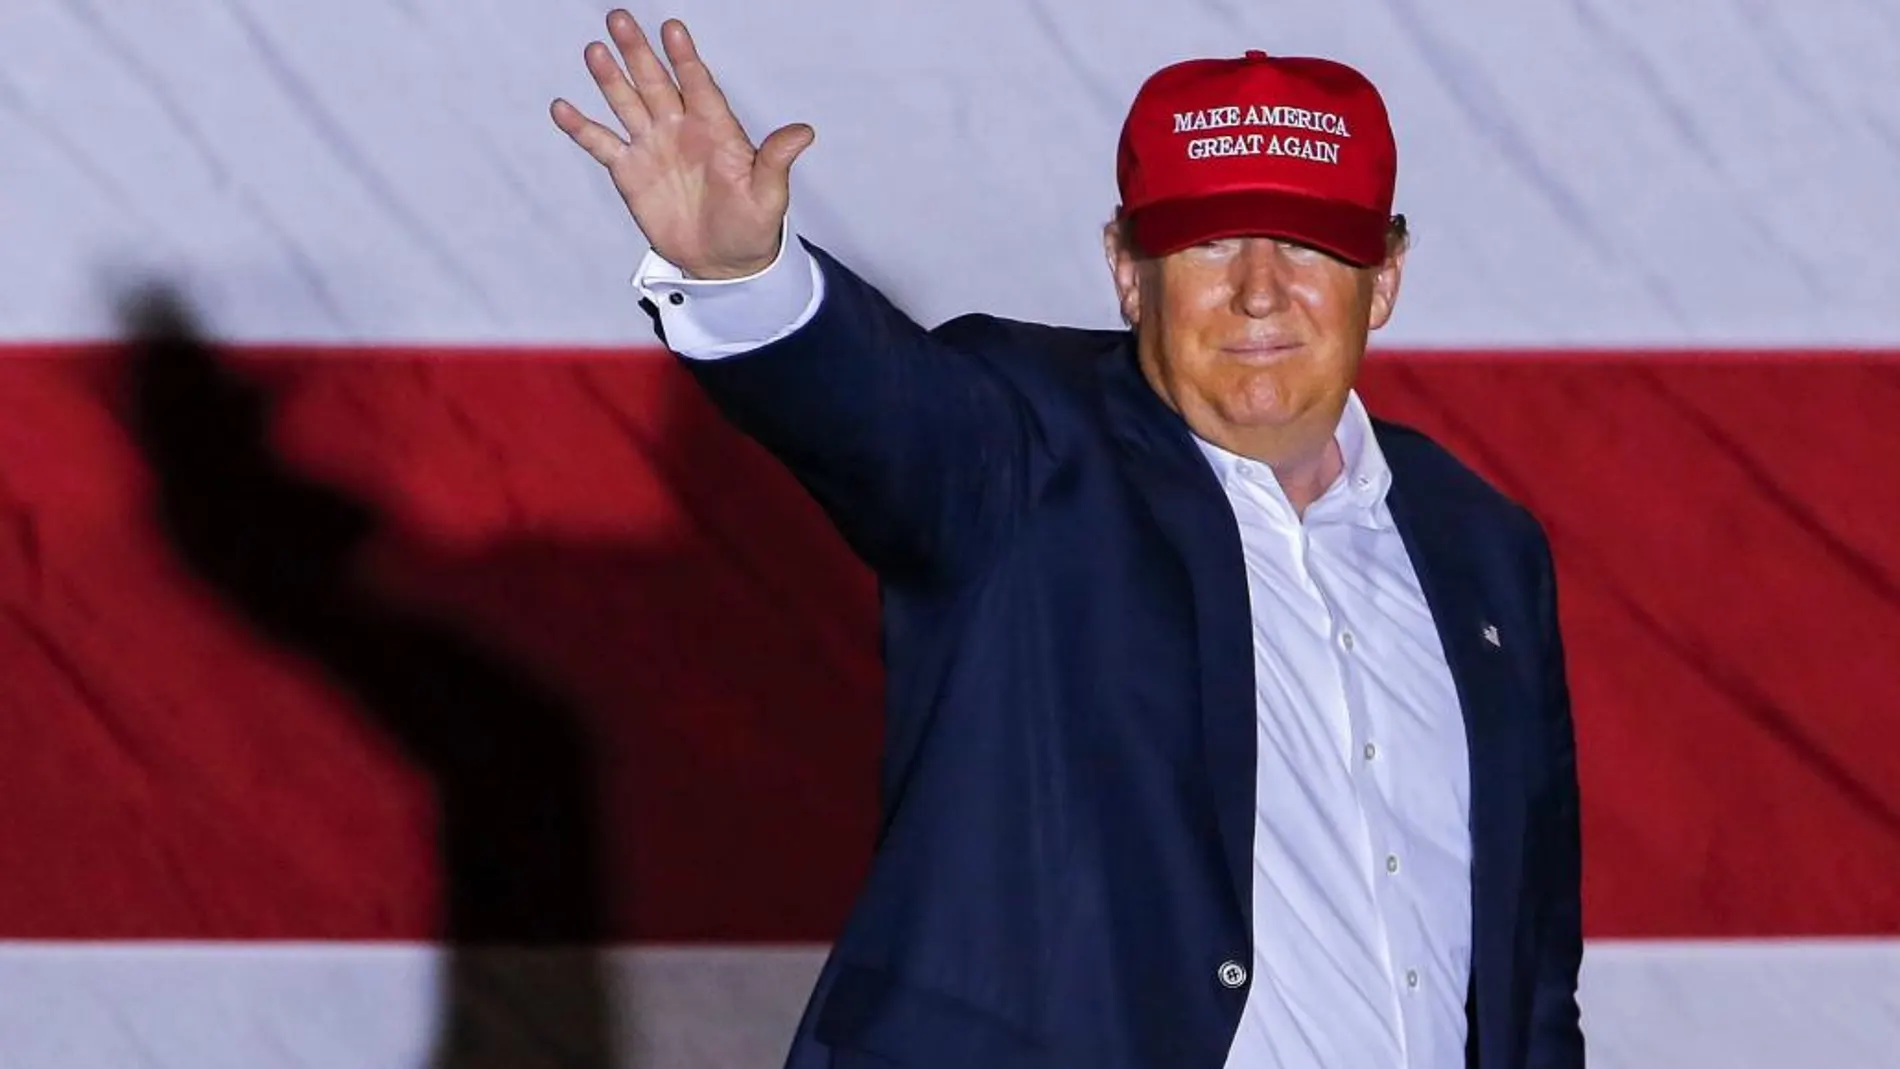 Fotografía de archivo fechada el 13 de marzo de 2016 que muestra al aspirante a la candidatura presidencial republicana, el magnate neoyorquino Donald Trump, durante un acto de campaña en Florida, Estados Unidos.